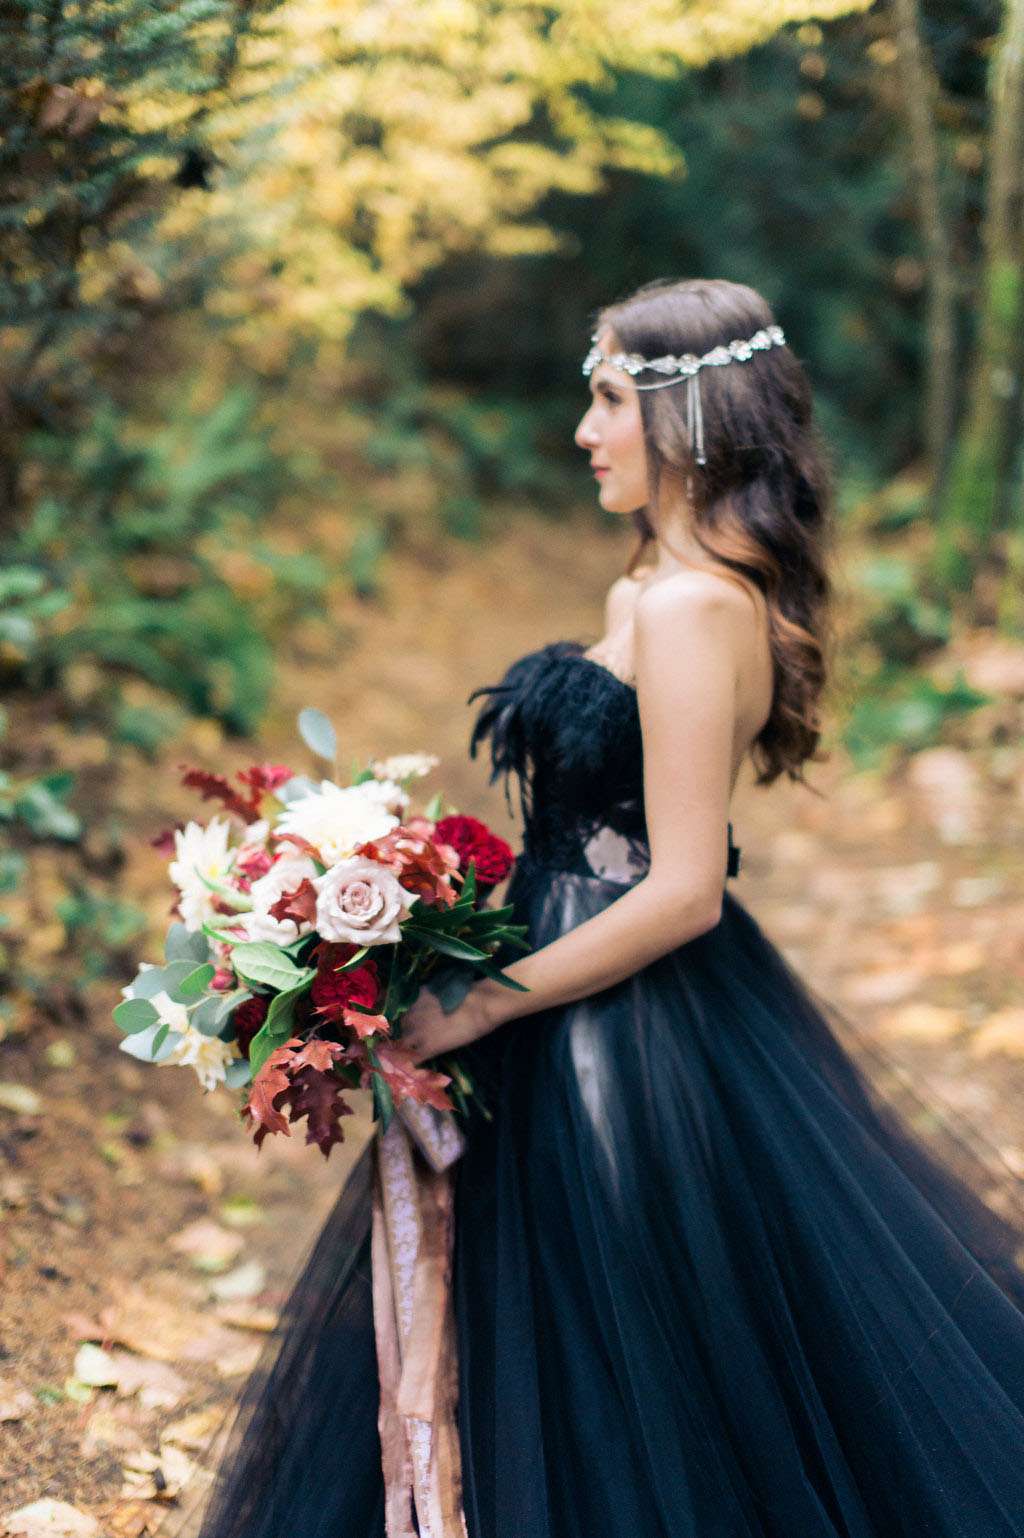 Woodland Nymph in a Black Wedding Dress · Rock n Roll Bride